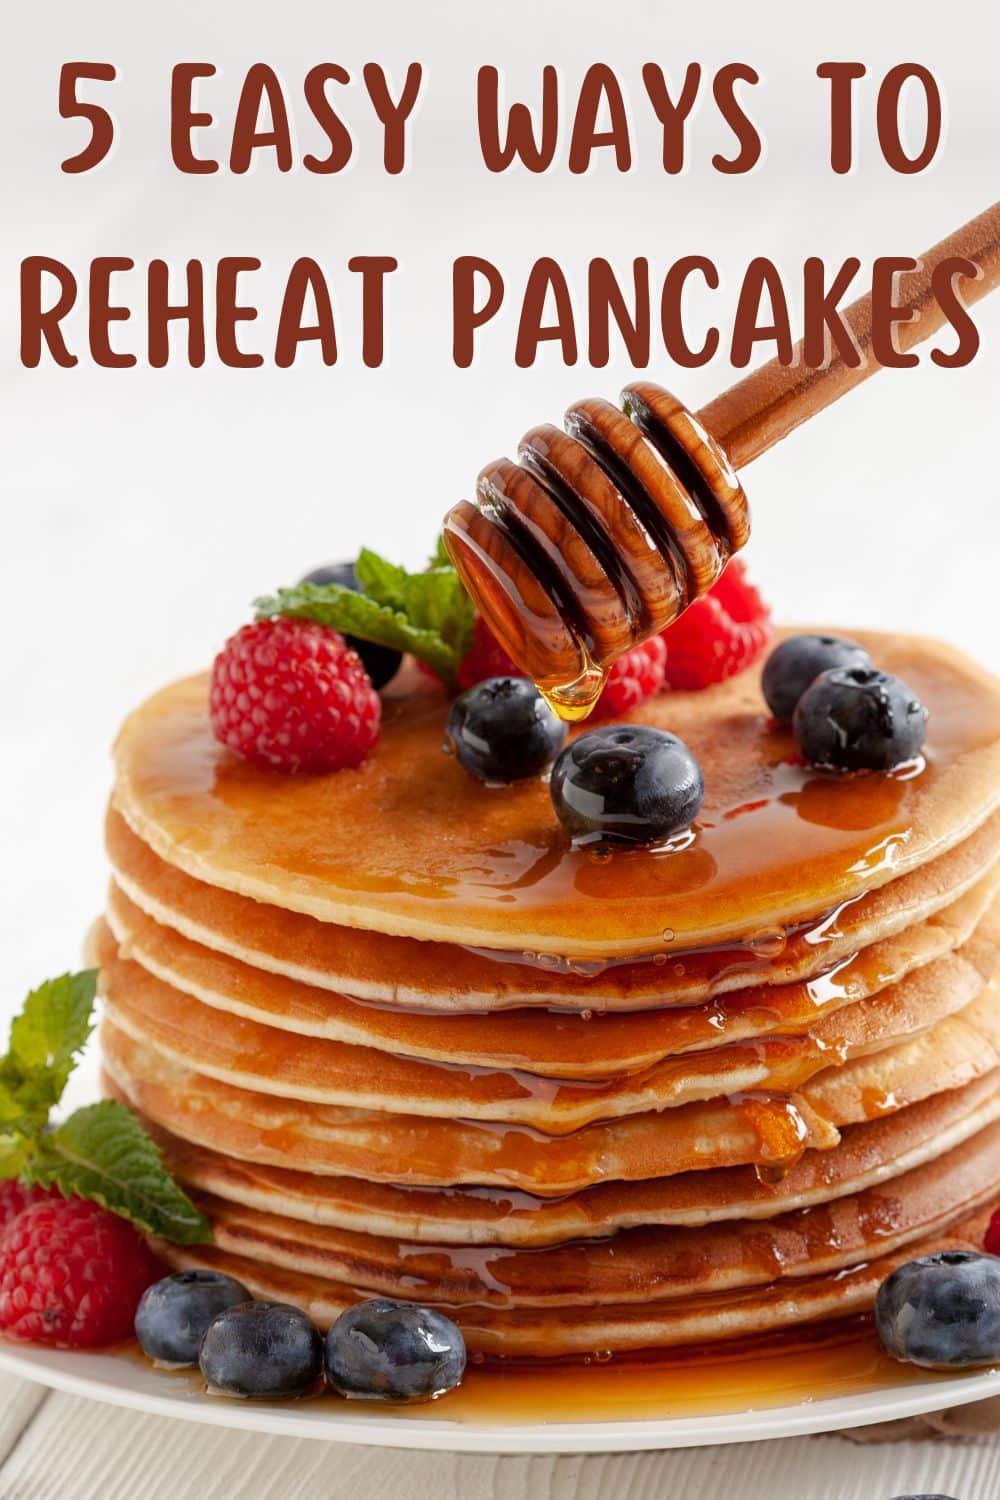 5 easy ways to reheat pancakes.